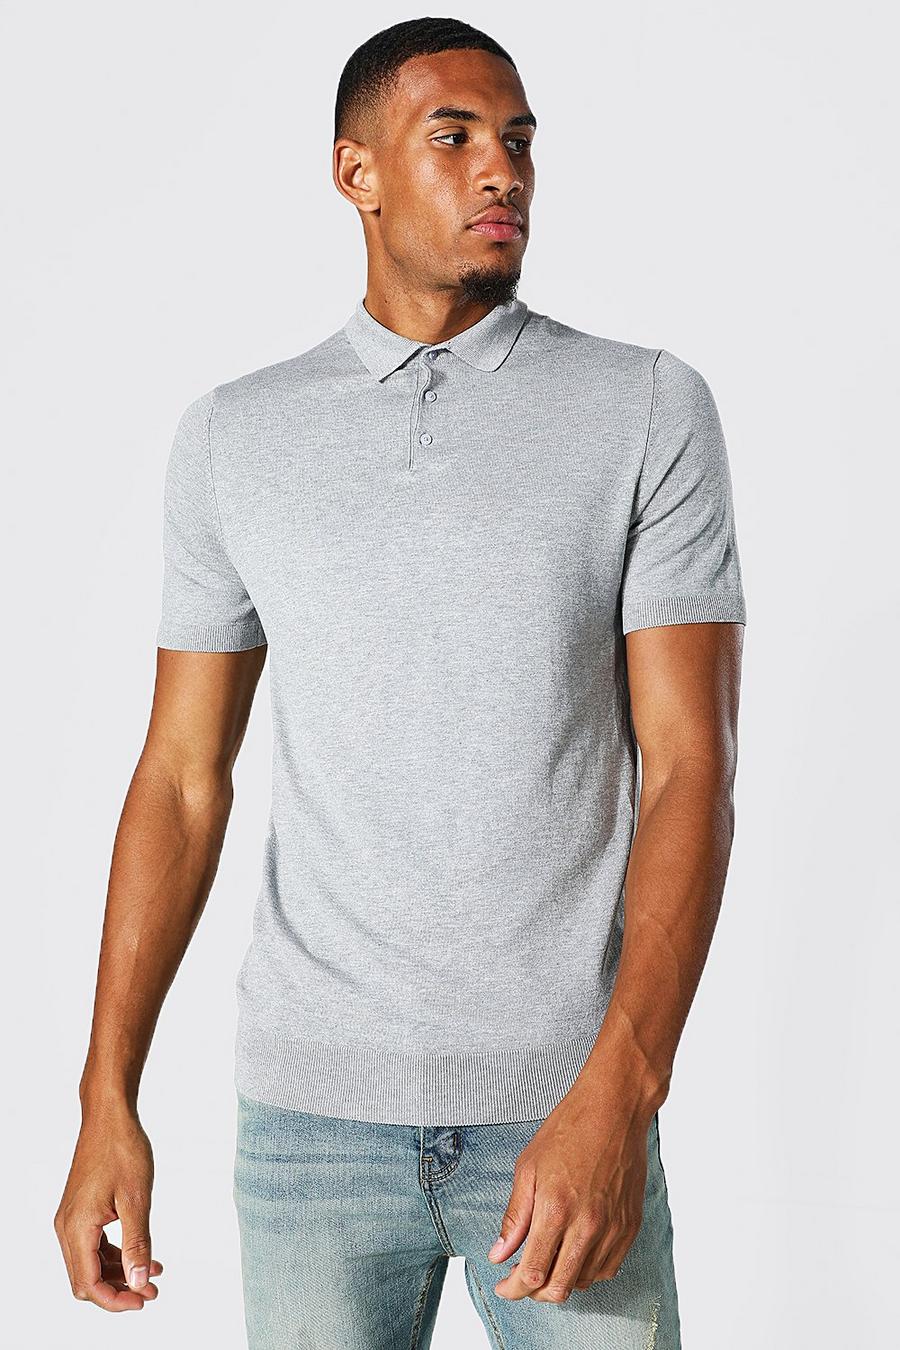 סלע אפור grey חולצת פולו סרוגה מבד ממוחזר עם שרוולים קצרים, לגברים גבוהים